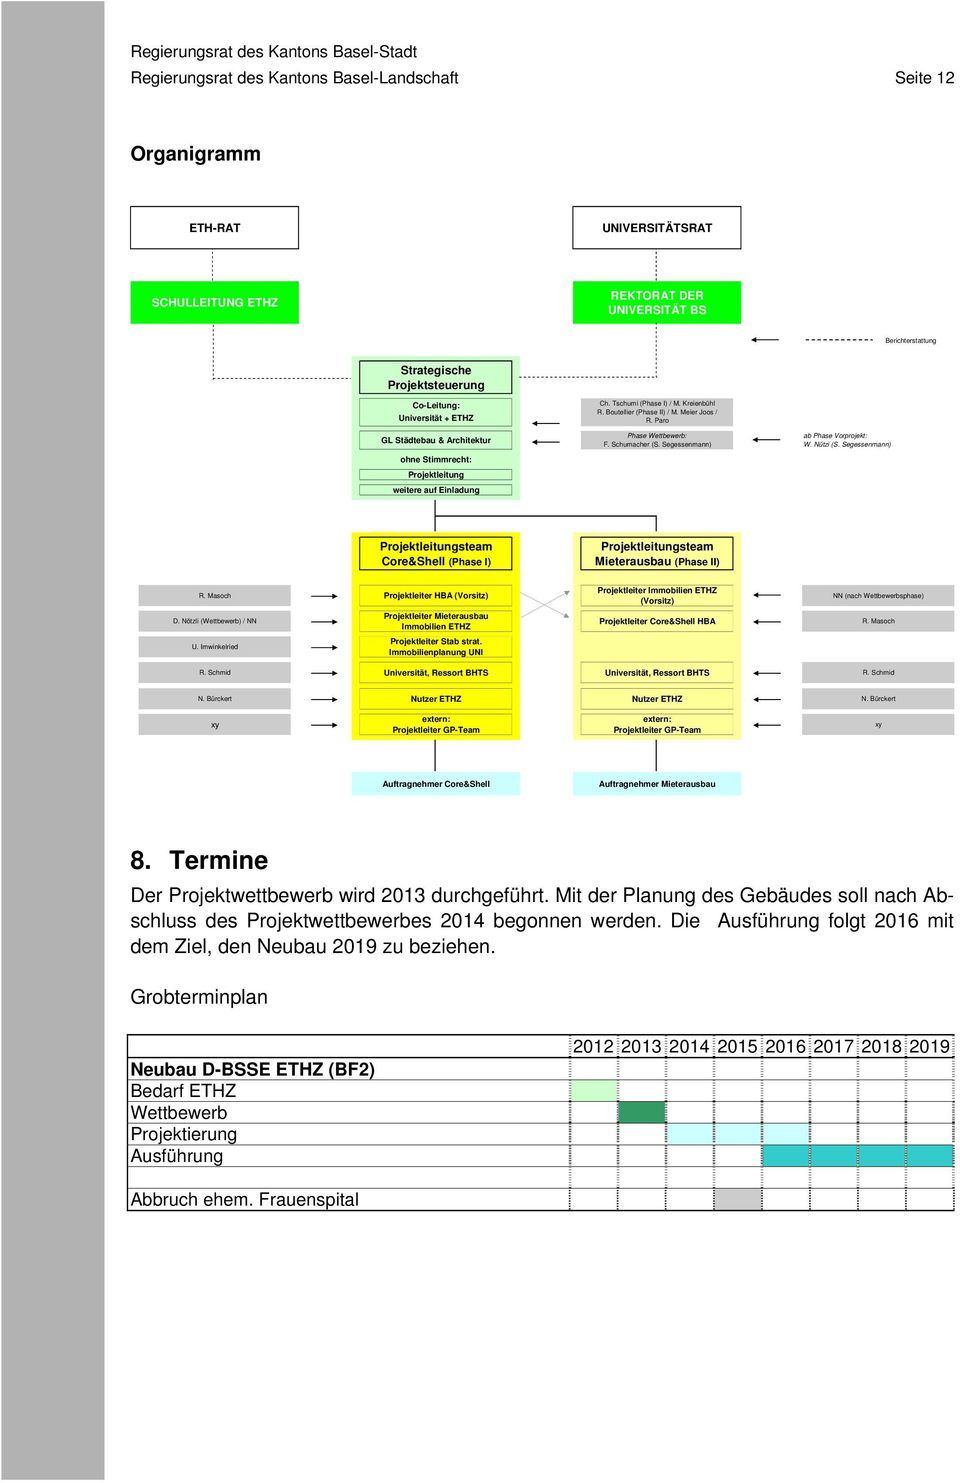 Paro Phase Wettbewerb: F. Schumacher (S. Segessenmann) ab Phase Vorprojekt: W. Nützi (S. Segessenmann) Projektleitungsteam Core&Shell (Phase I) Projektleitungsteam Mieterausbau (Phase II) R.